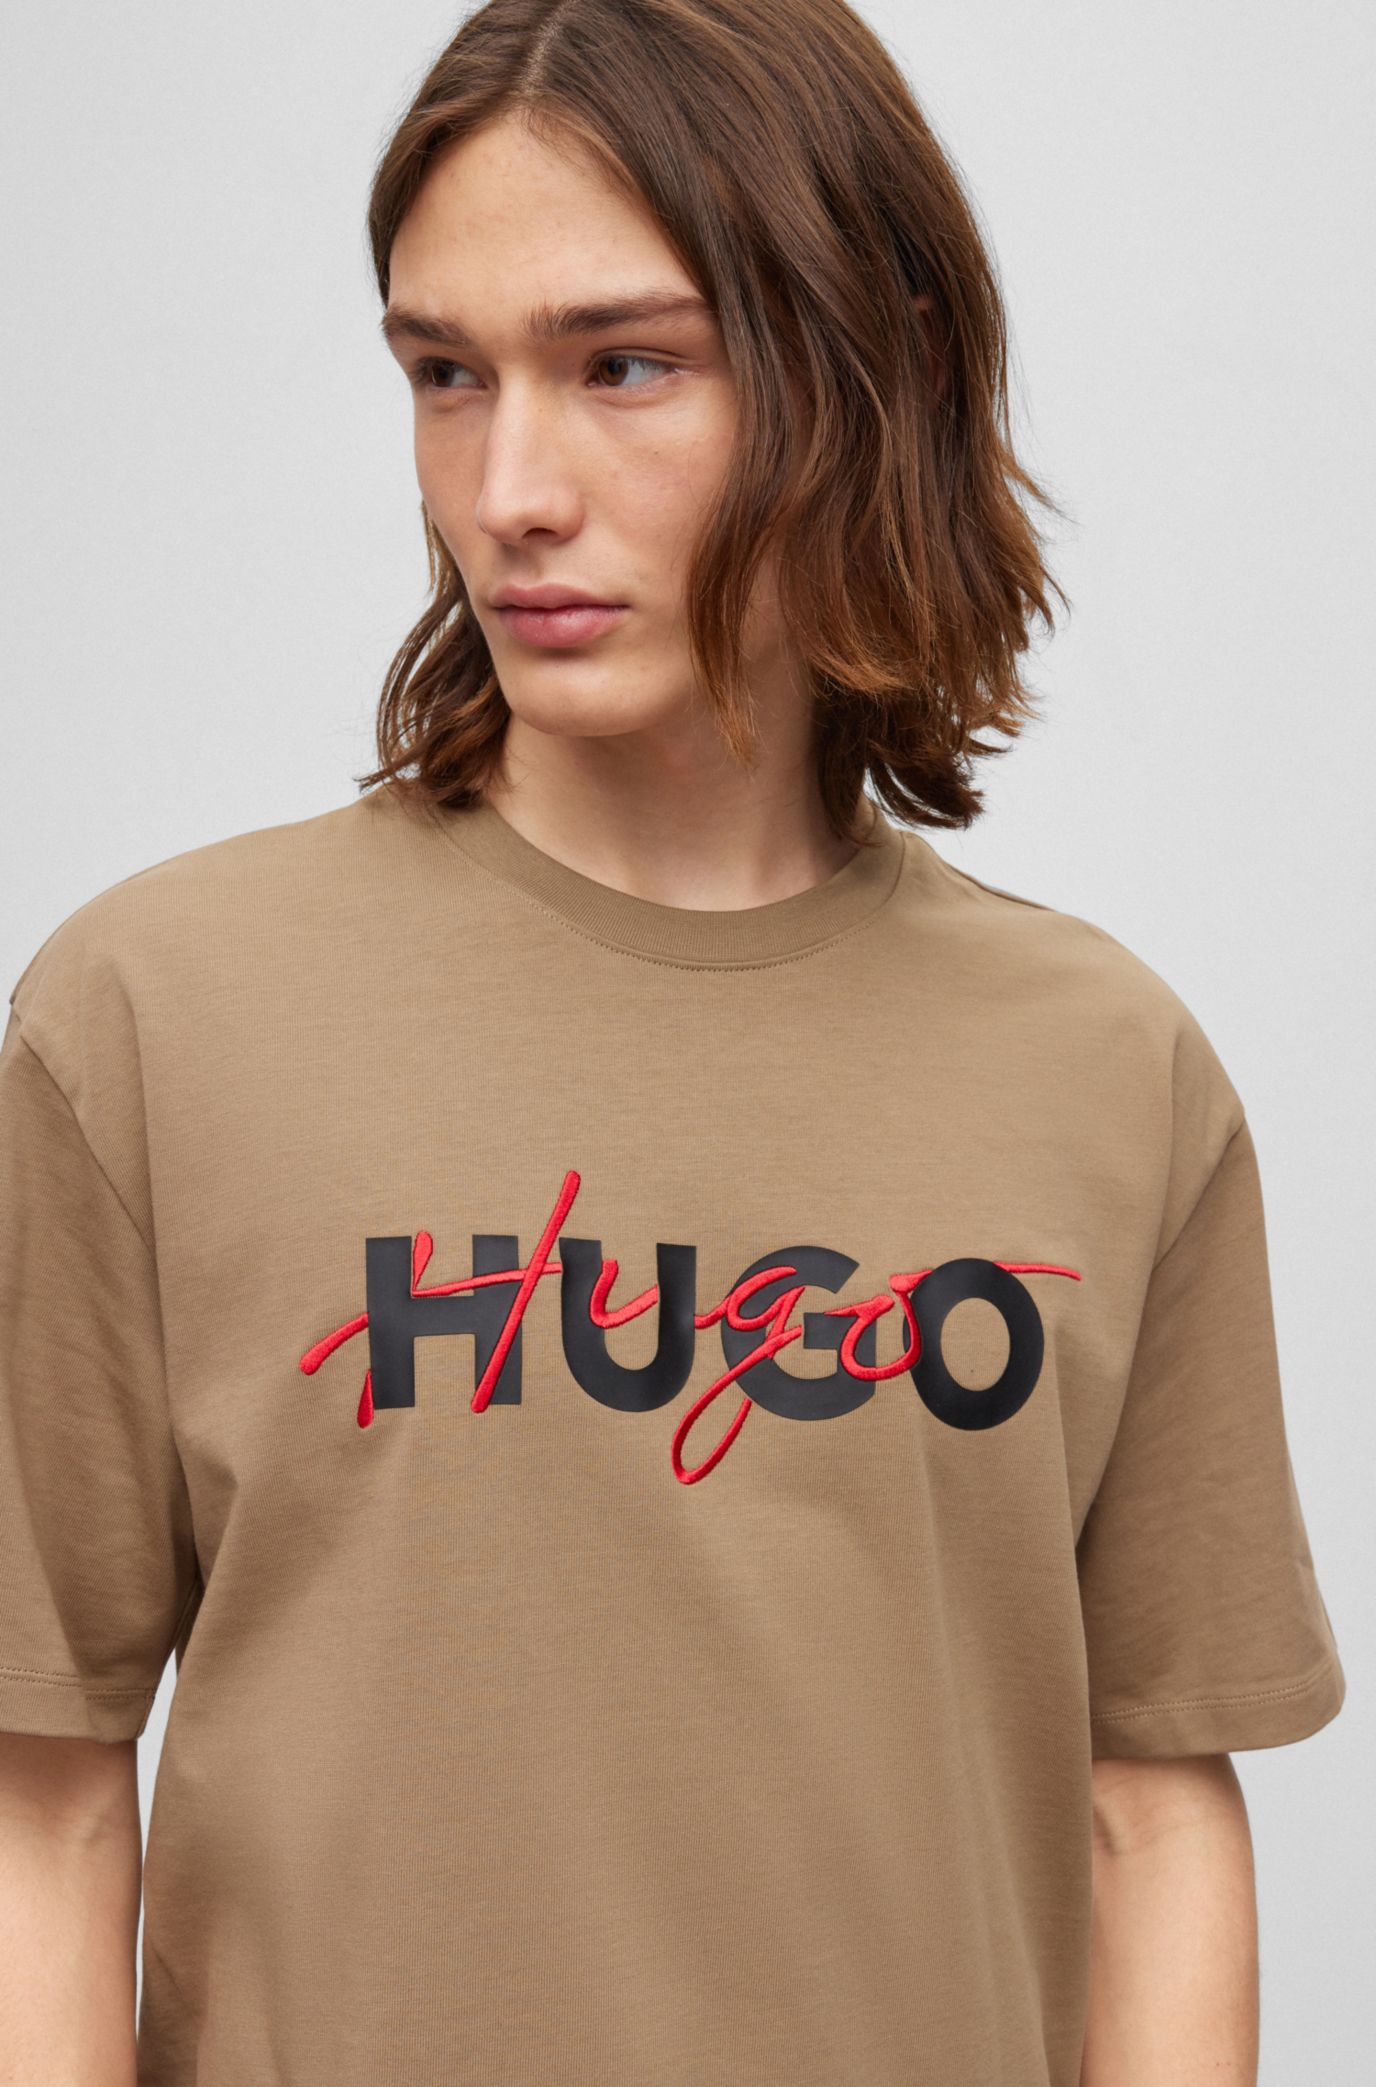 HUGO   コットンジャージー Tシャツ ダブルロゴプリント